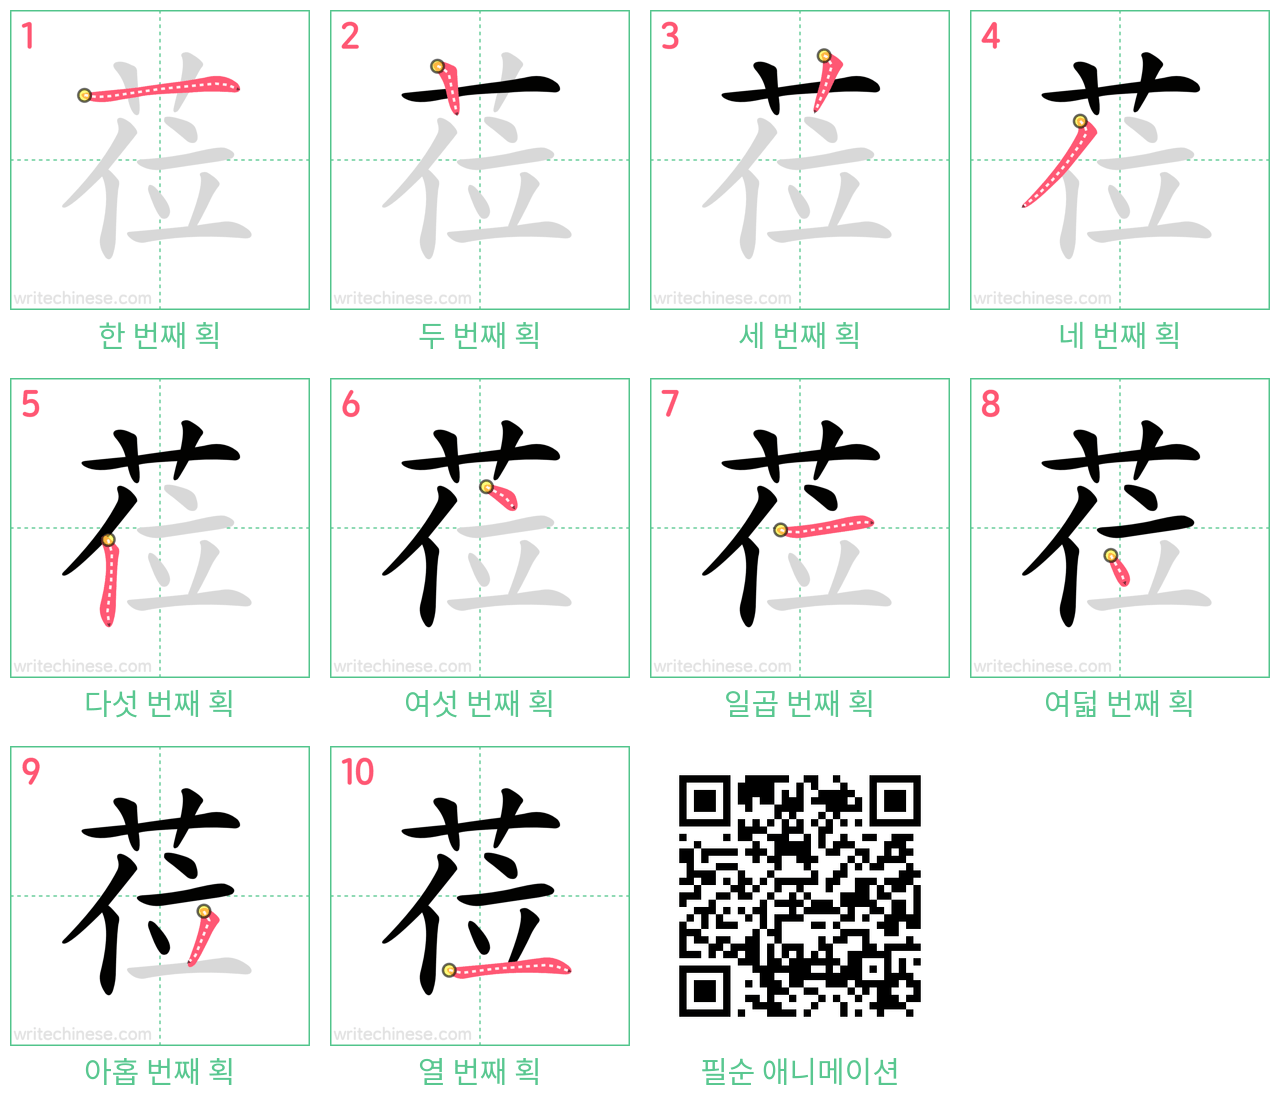 莅 step-by-step stroke order diagrams